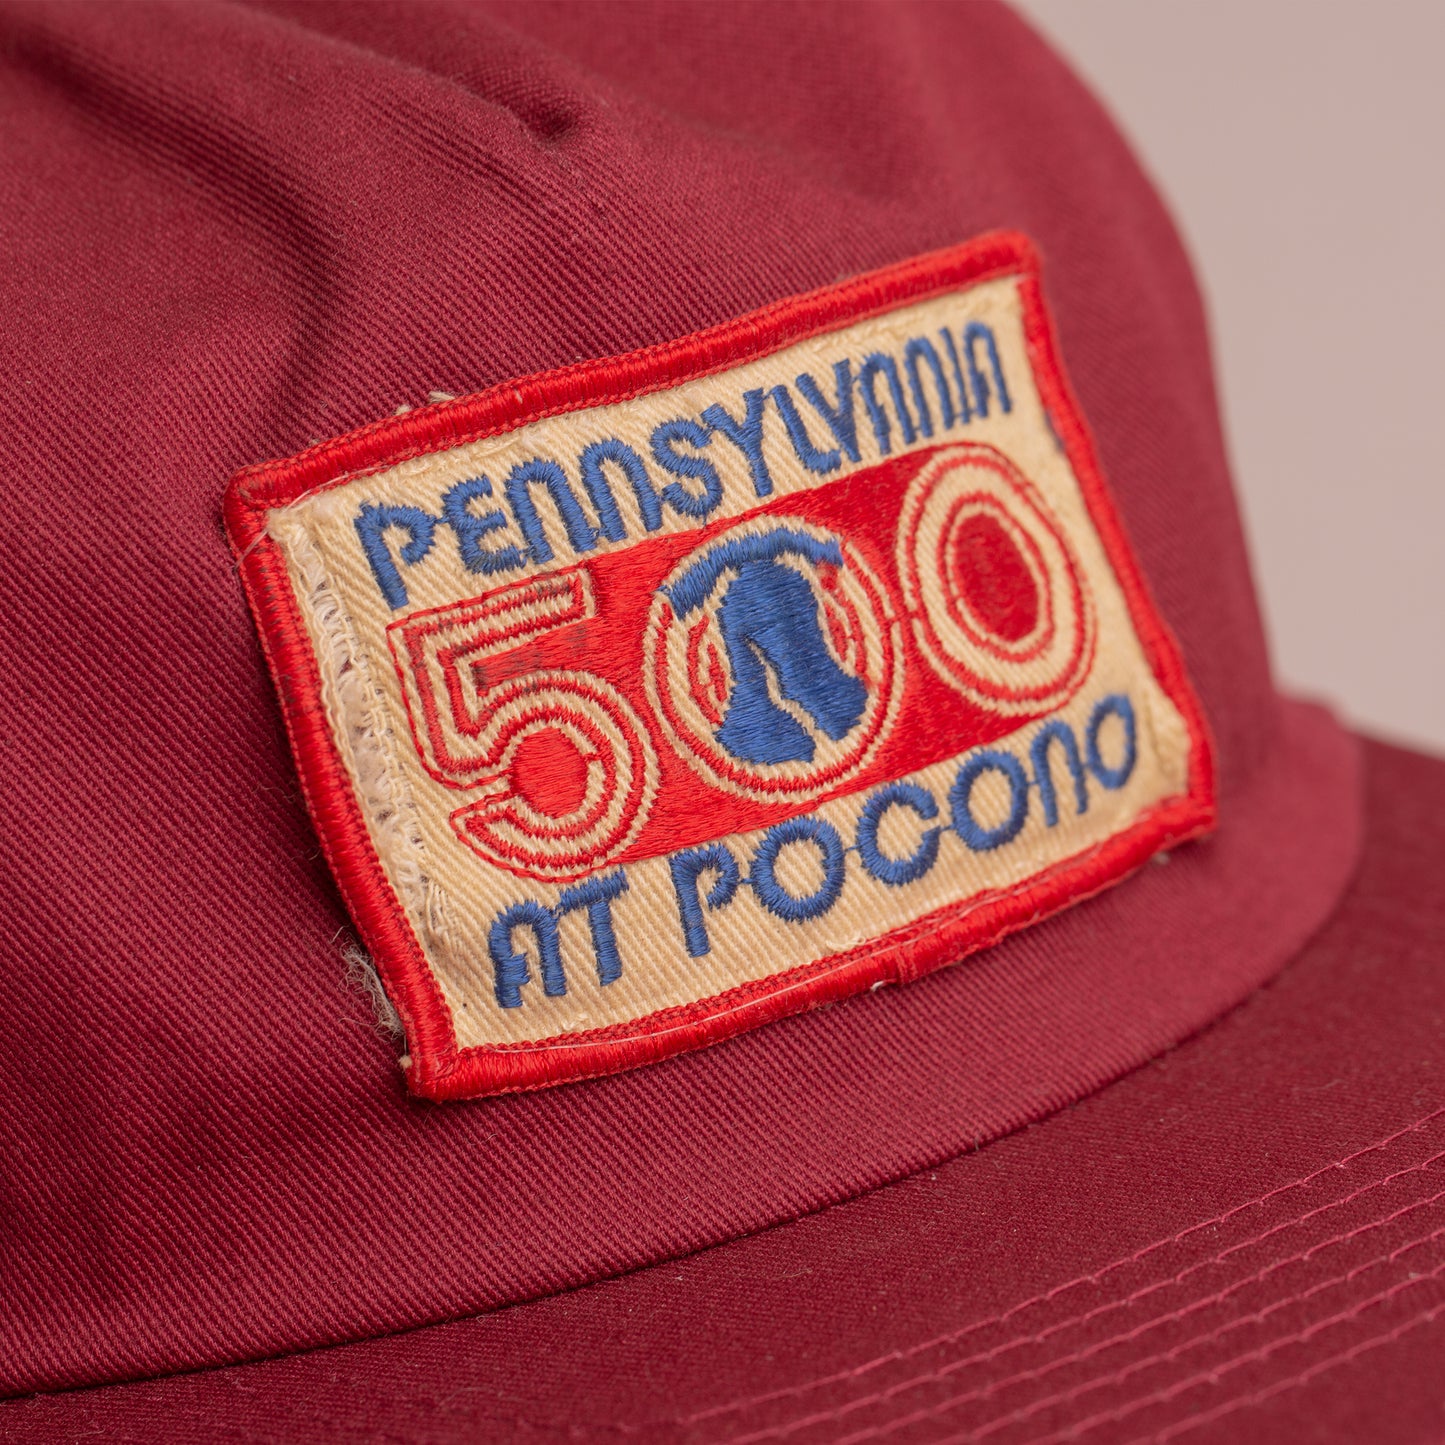 Pennsylvania 500 at Pocano